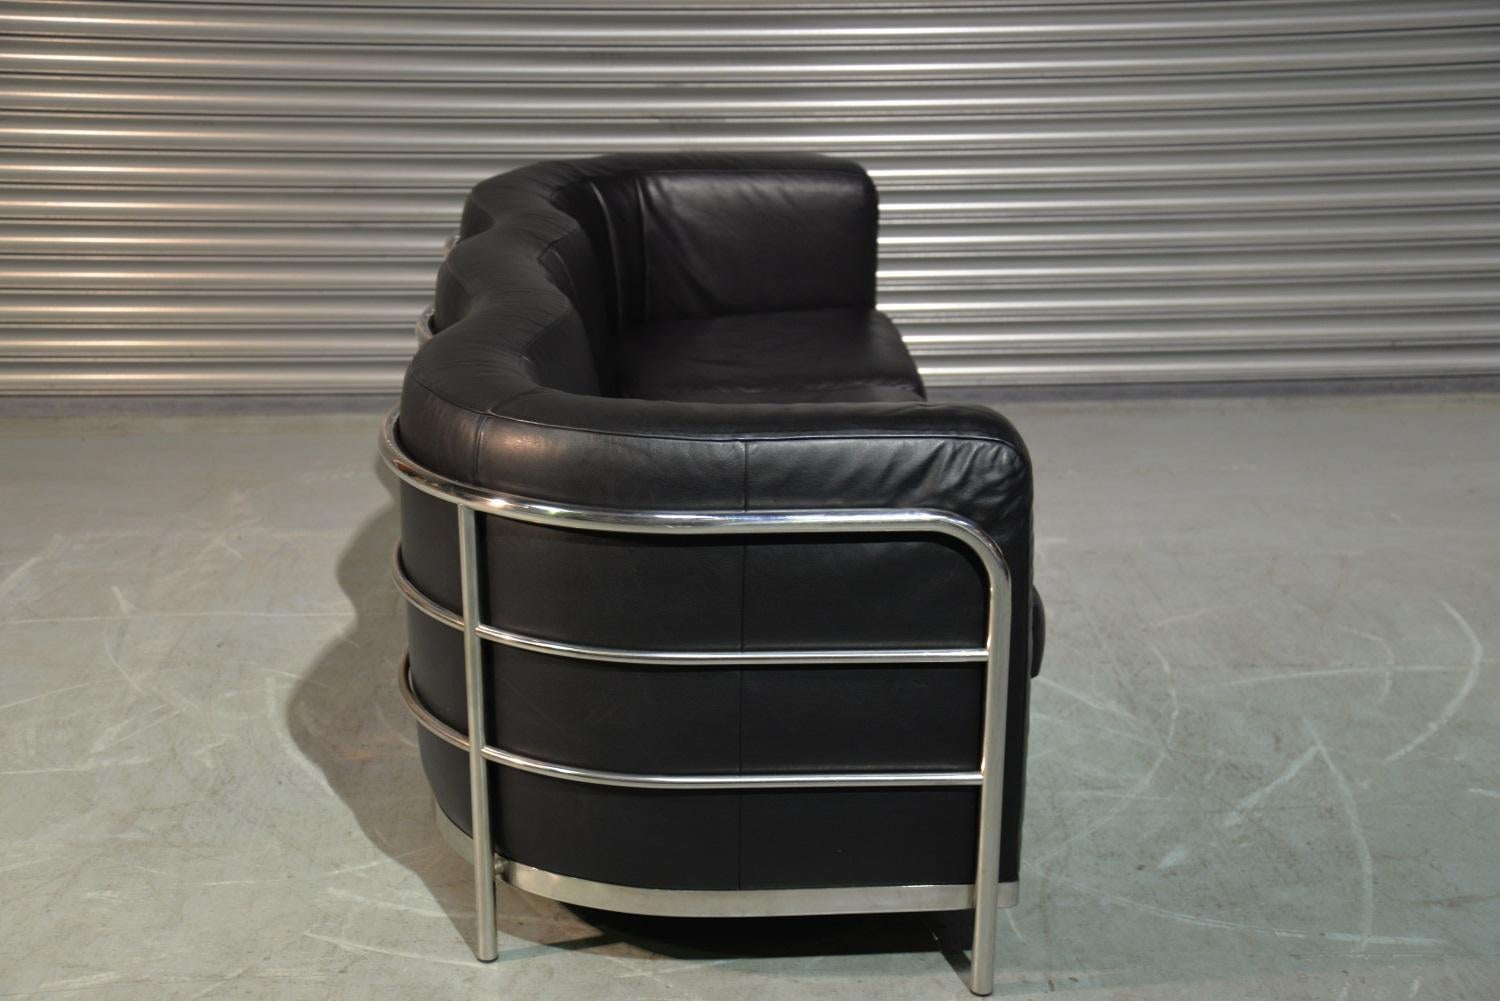 Original Zanotta Onda Leather Sofa Designed by Paolo Lomazzi, 1985 For Sale 4